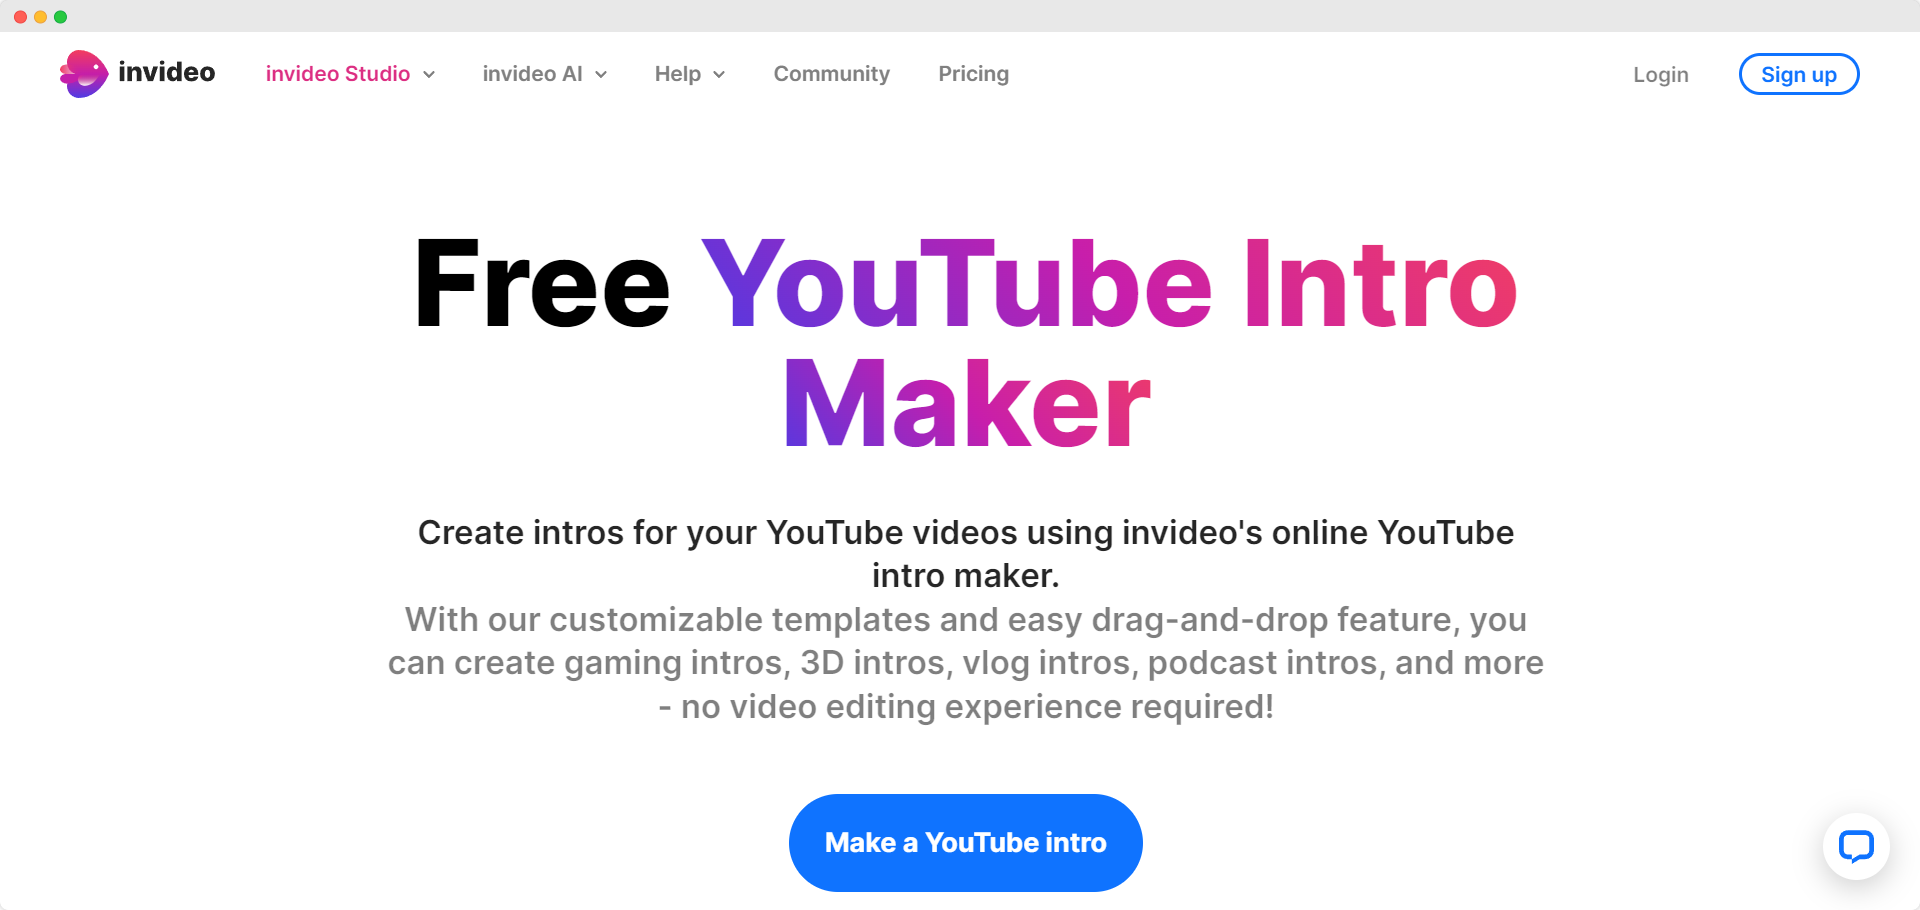 InVideo YouTube intro maker